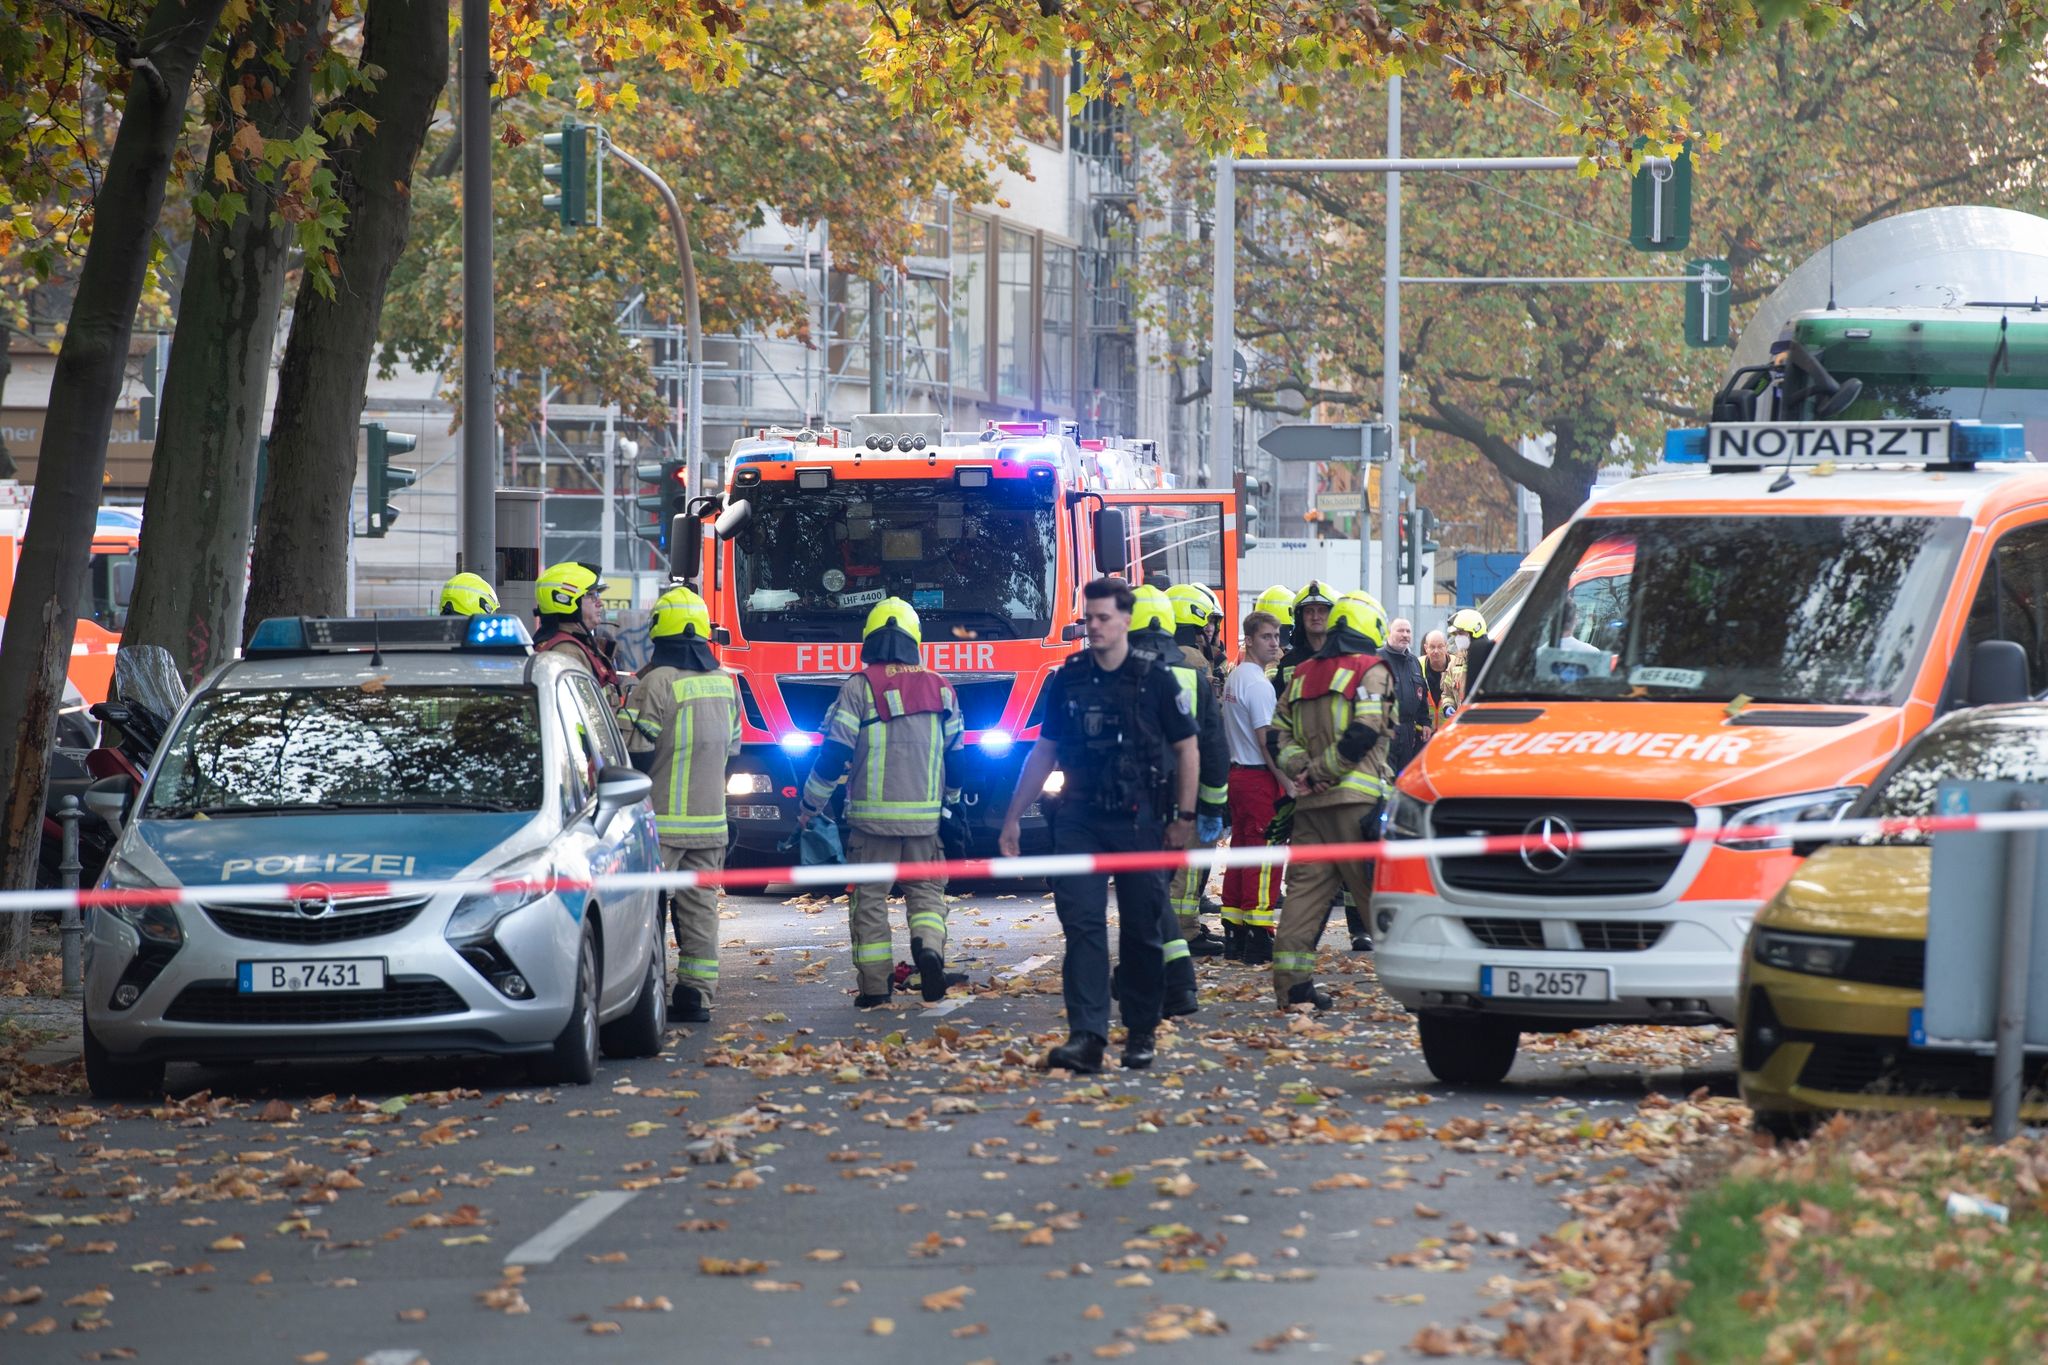 Einsatzfahrzeuge von Polizei und Feuerwehr stehen an der Bundesallee in Berlin-Wilmersdorf.